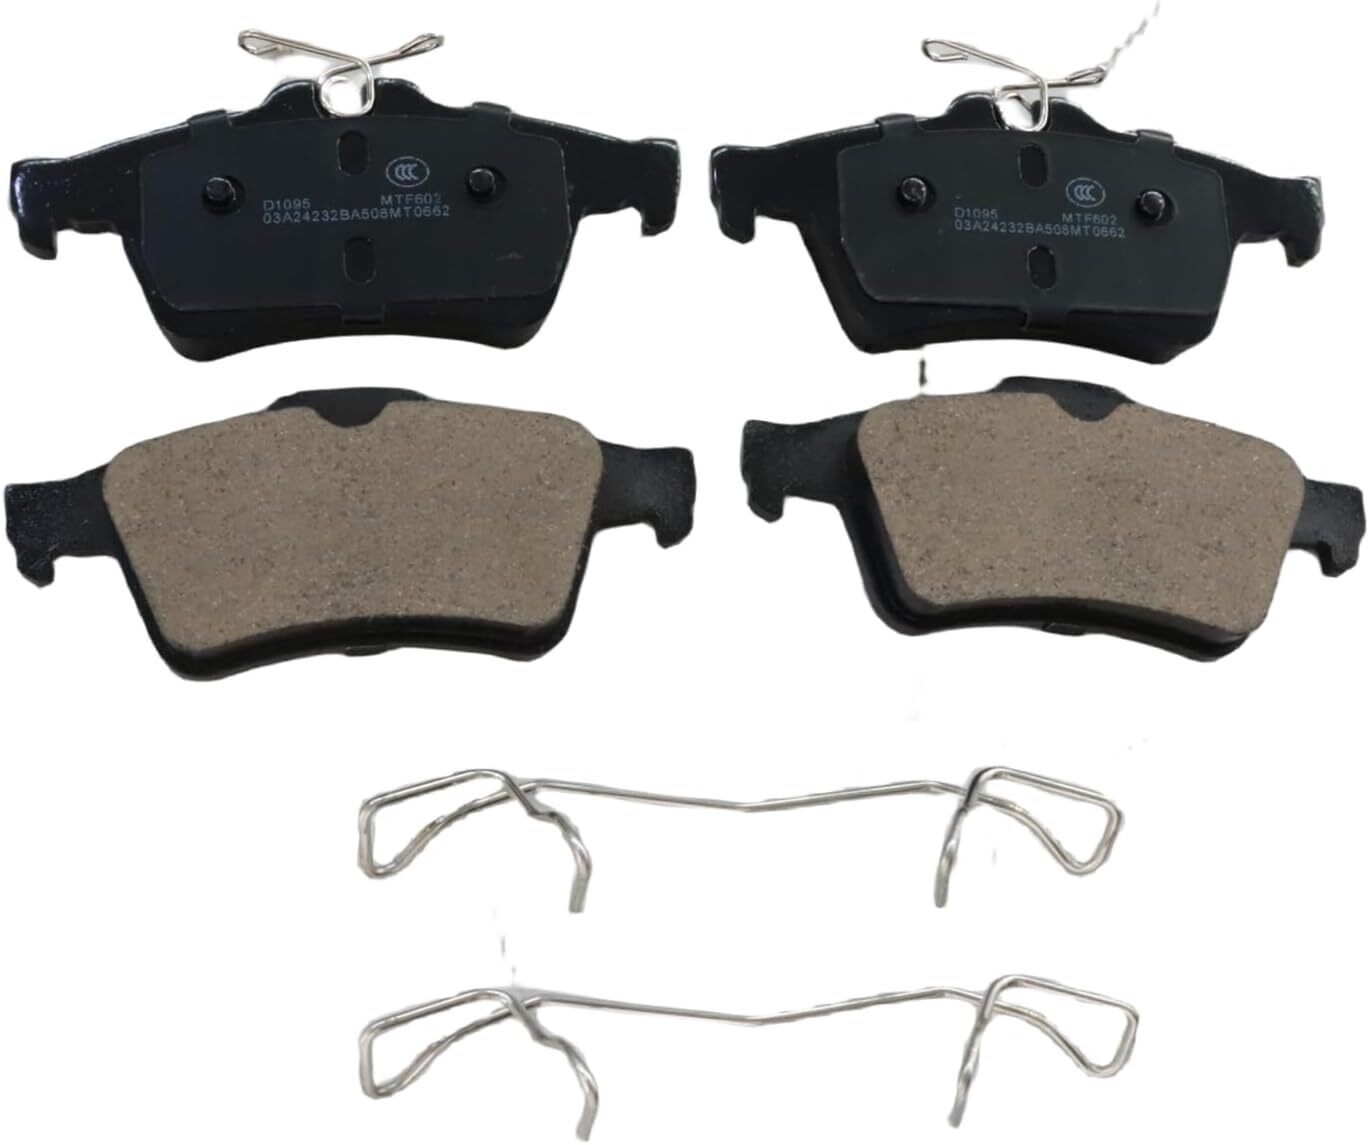 Rear Ceramic Brake Pads Kits Fit for Escape Focus Mazda 3/5 V olvo C30, D1095